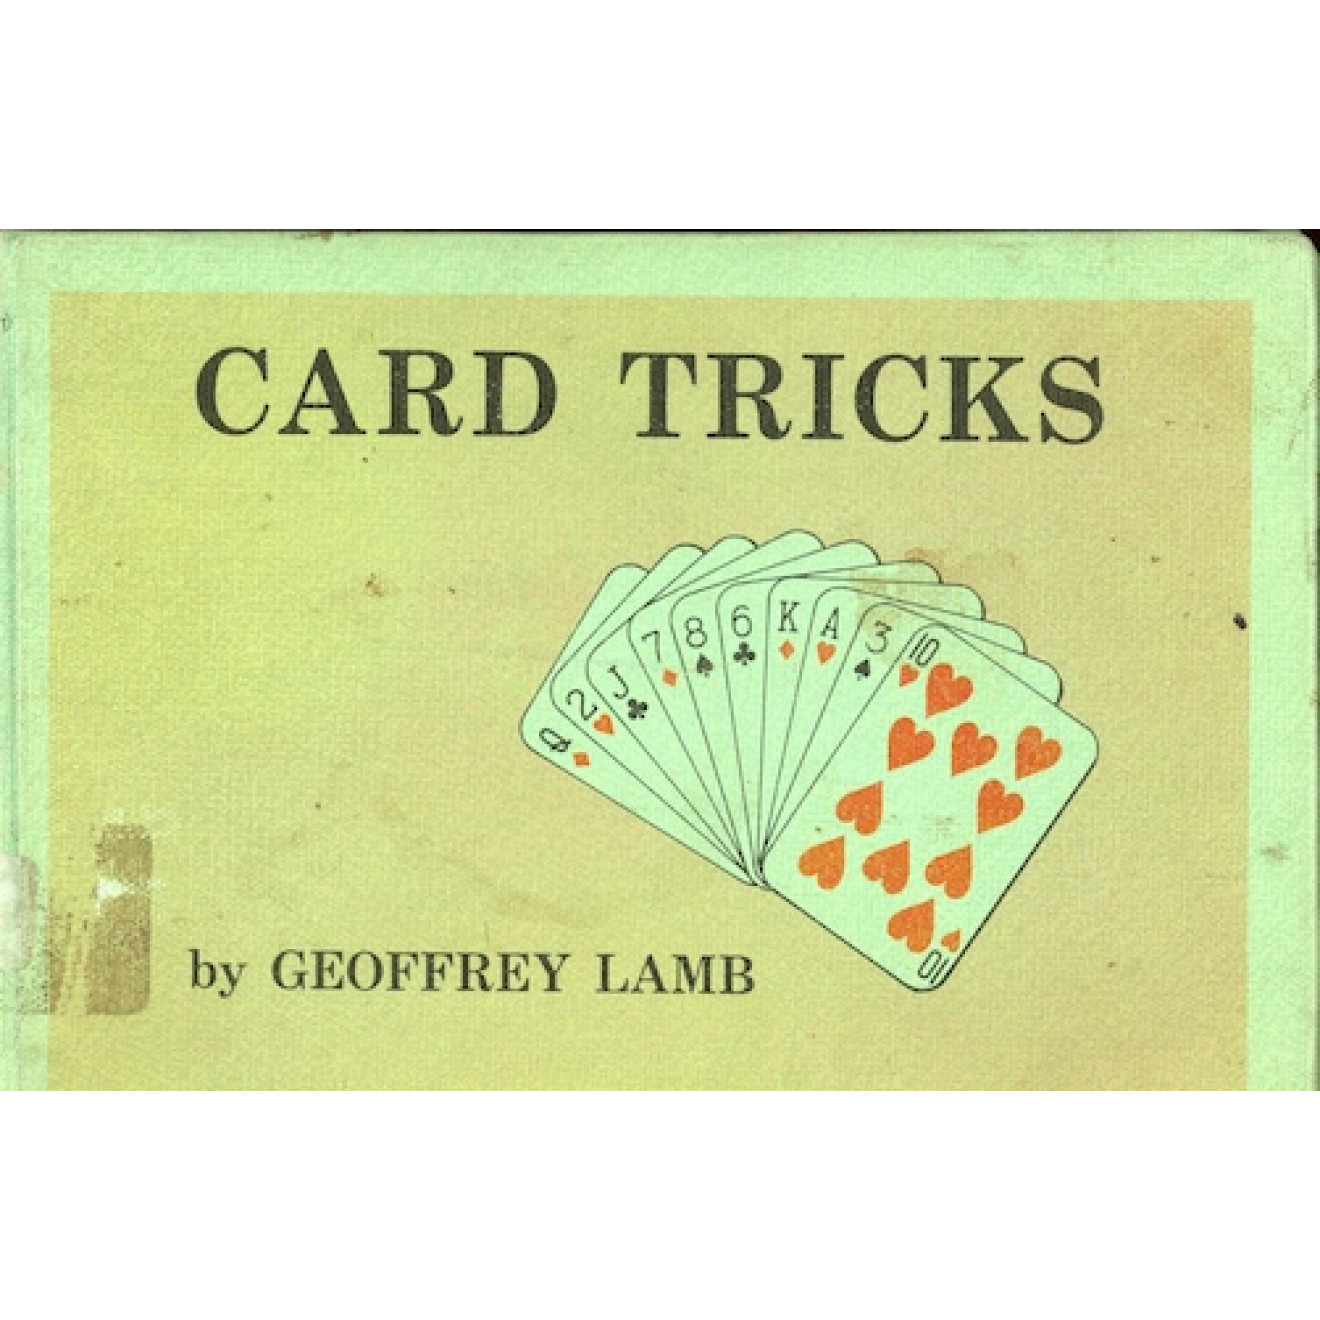 Card Tricks by Geoffrey Lamb